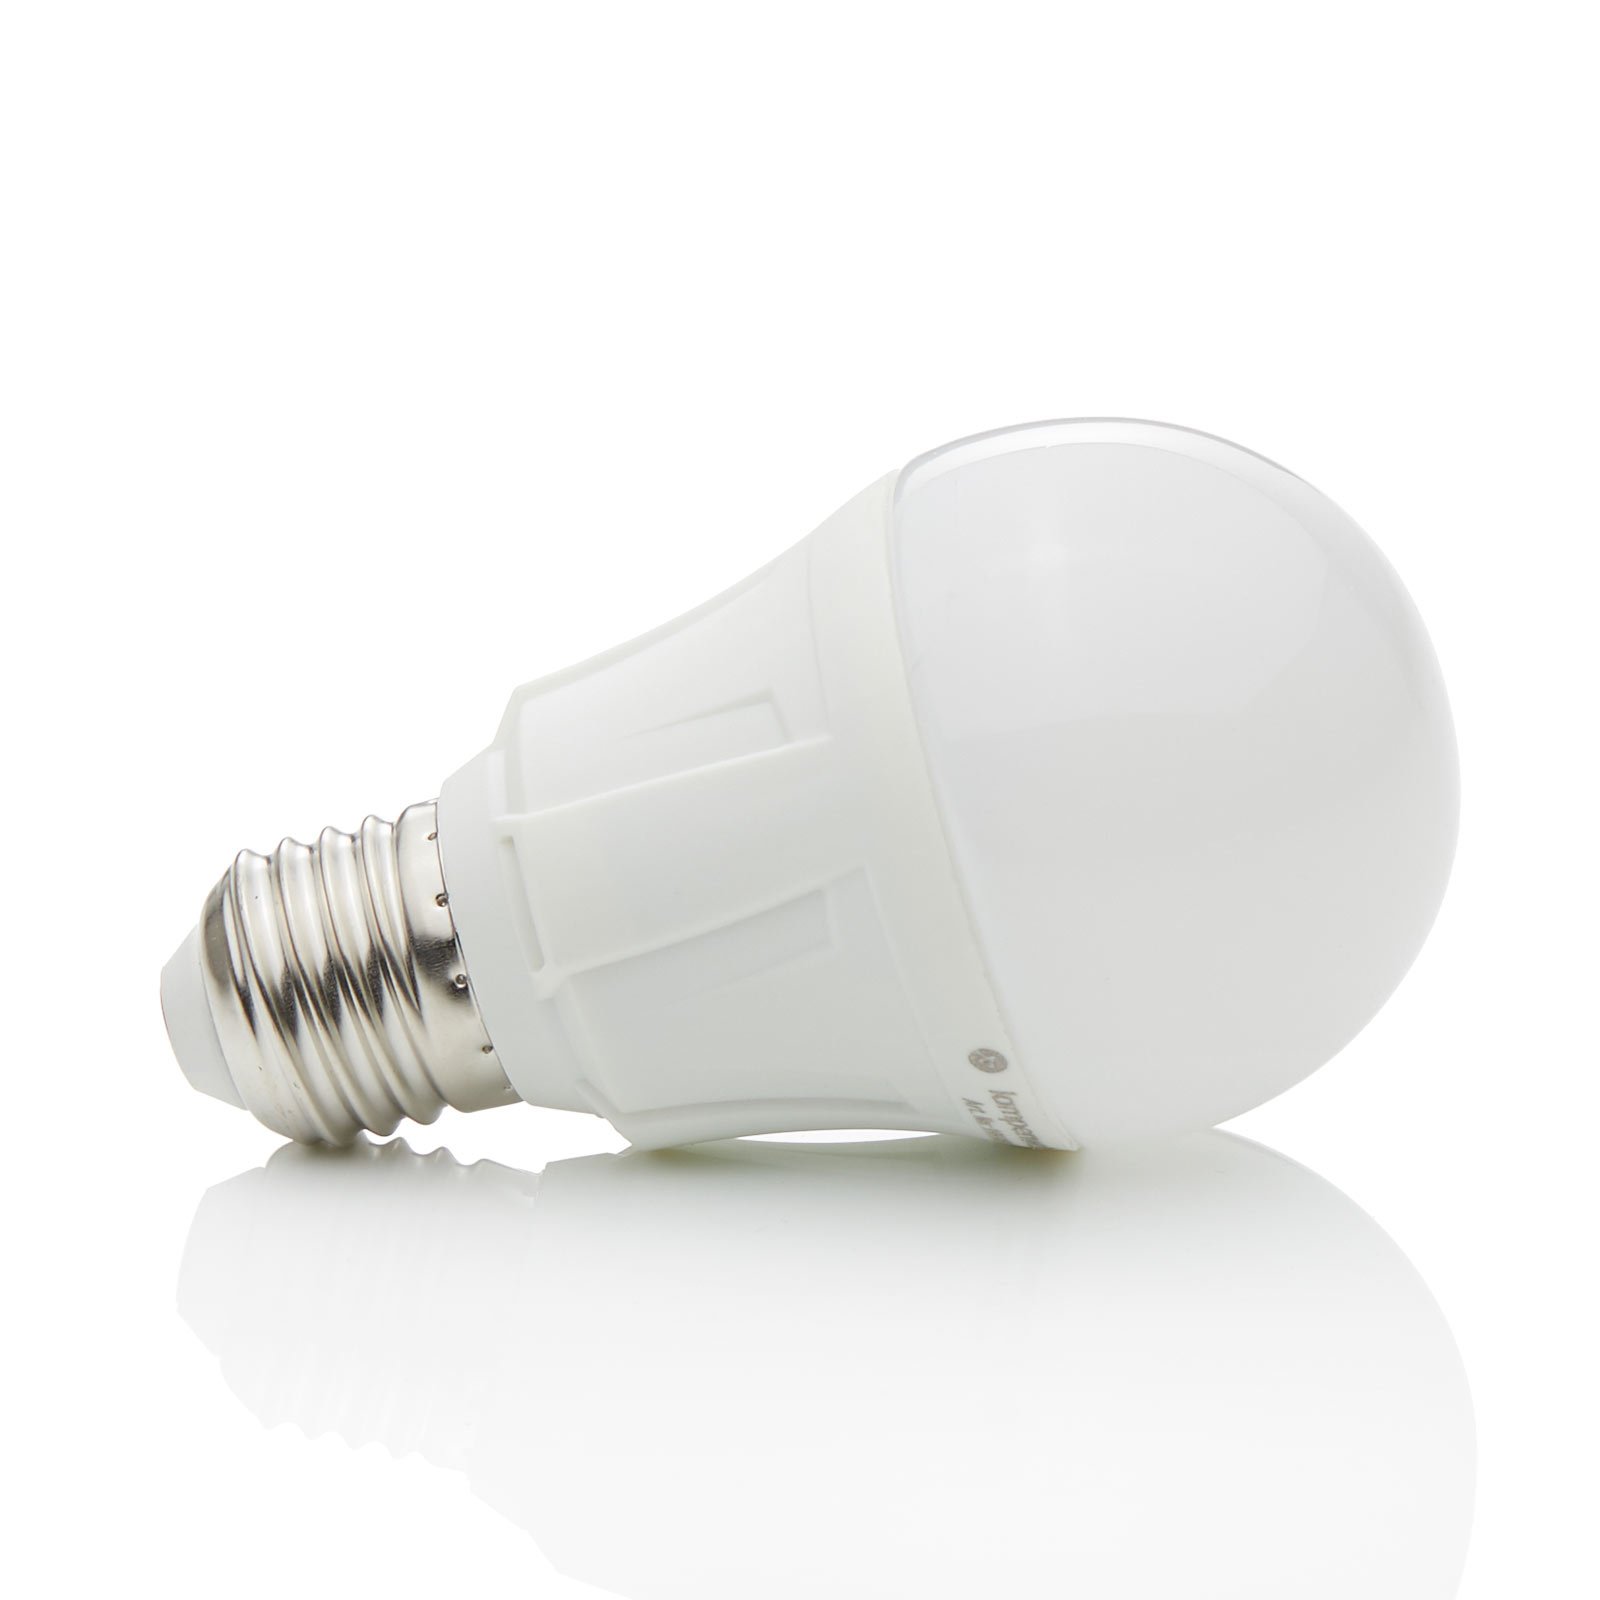 Aanpassen blijven douche E27 11W 830 LED lamp in gloeilampvorm warmwit | Lampen24.be